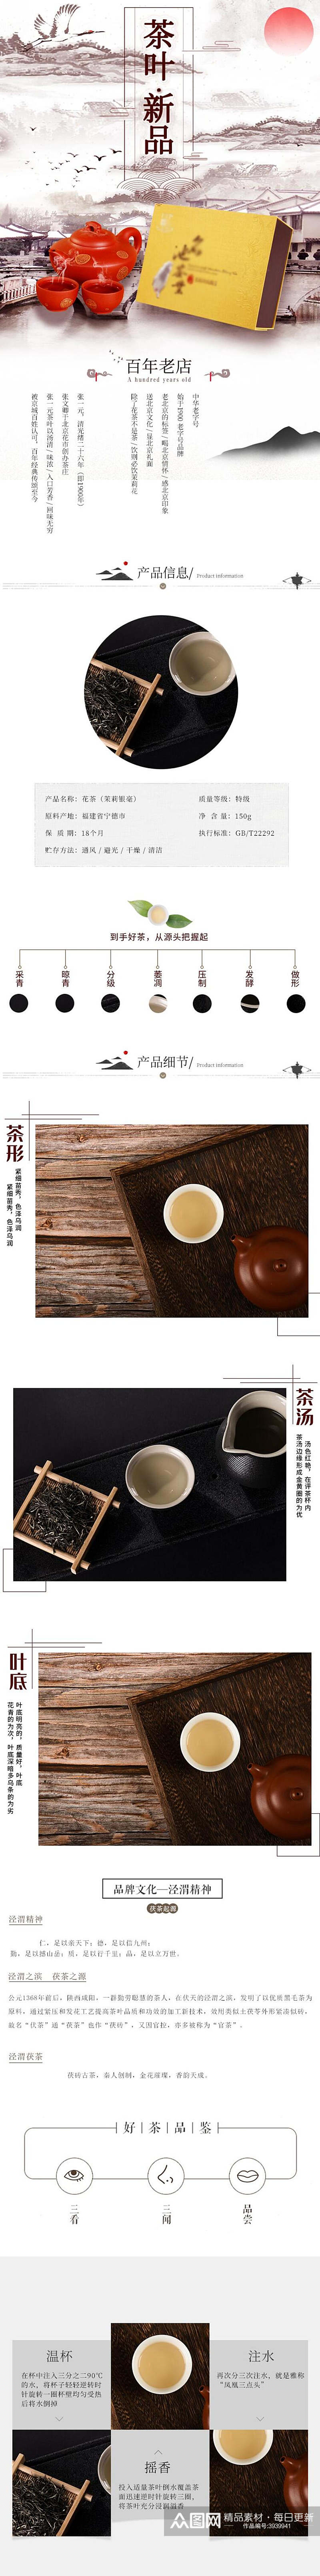 高端新品茶饮类手机版详情页素材